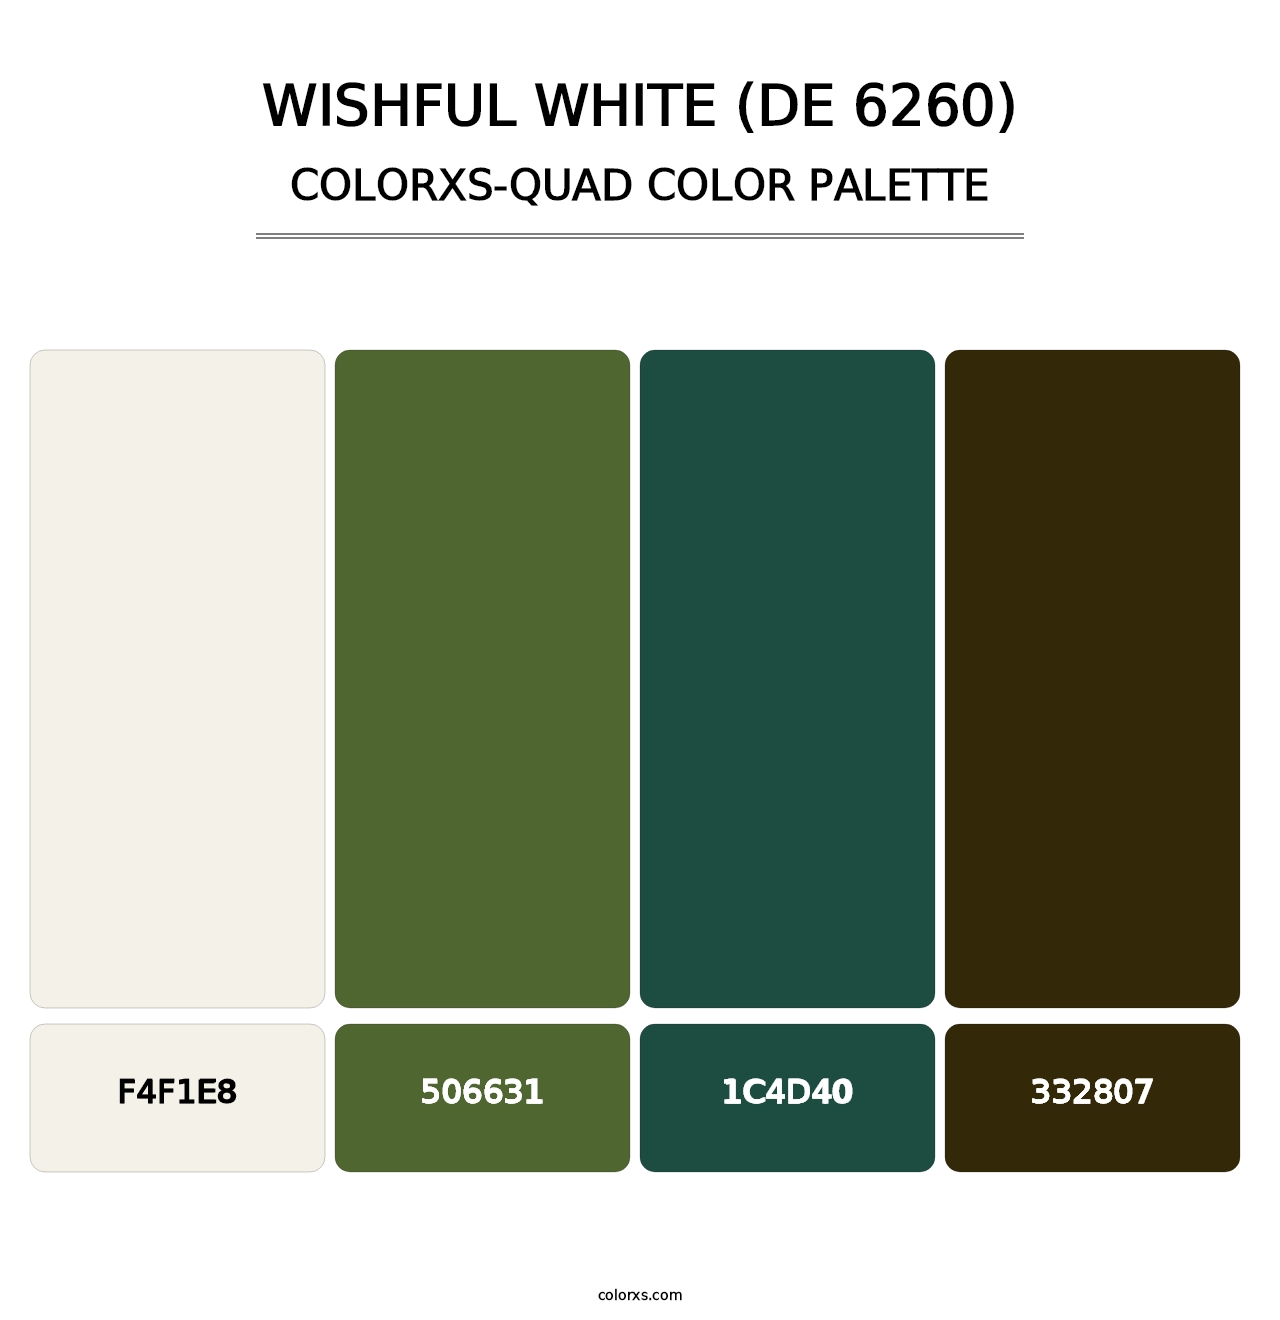 Wishful White (DE 6260) - Colorxs Quad Palette